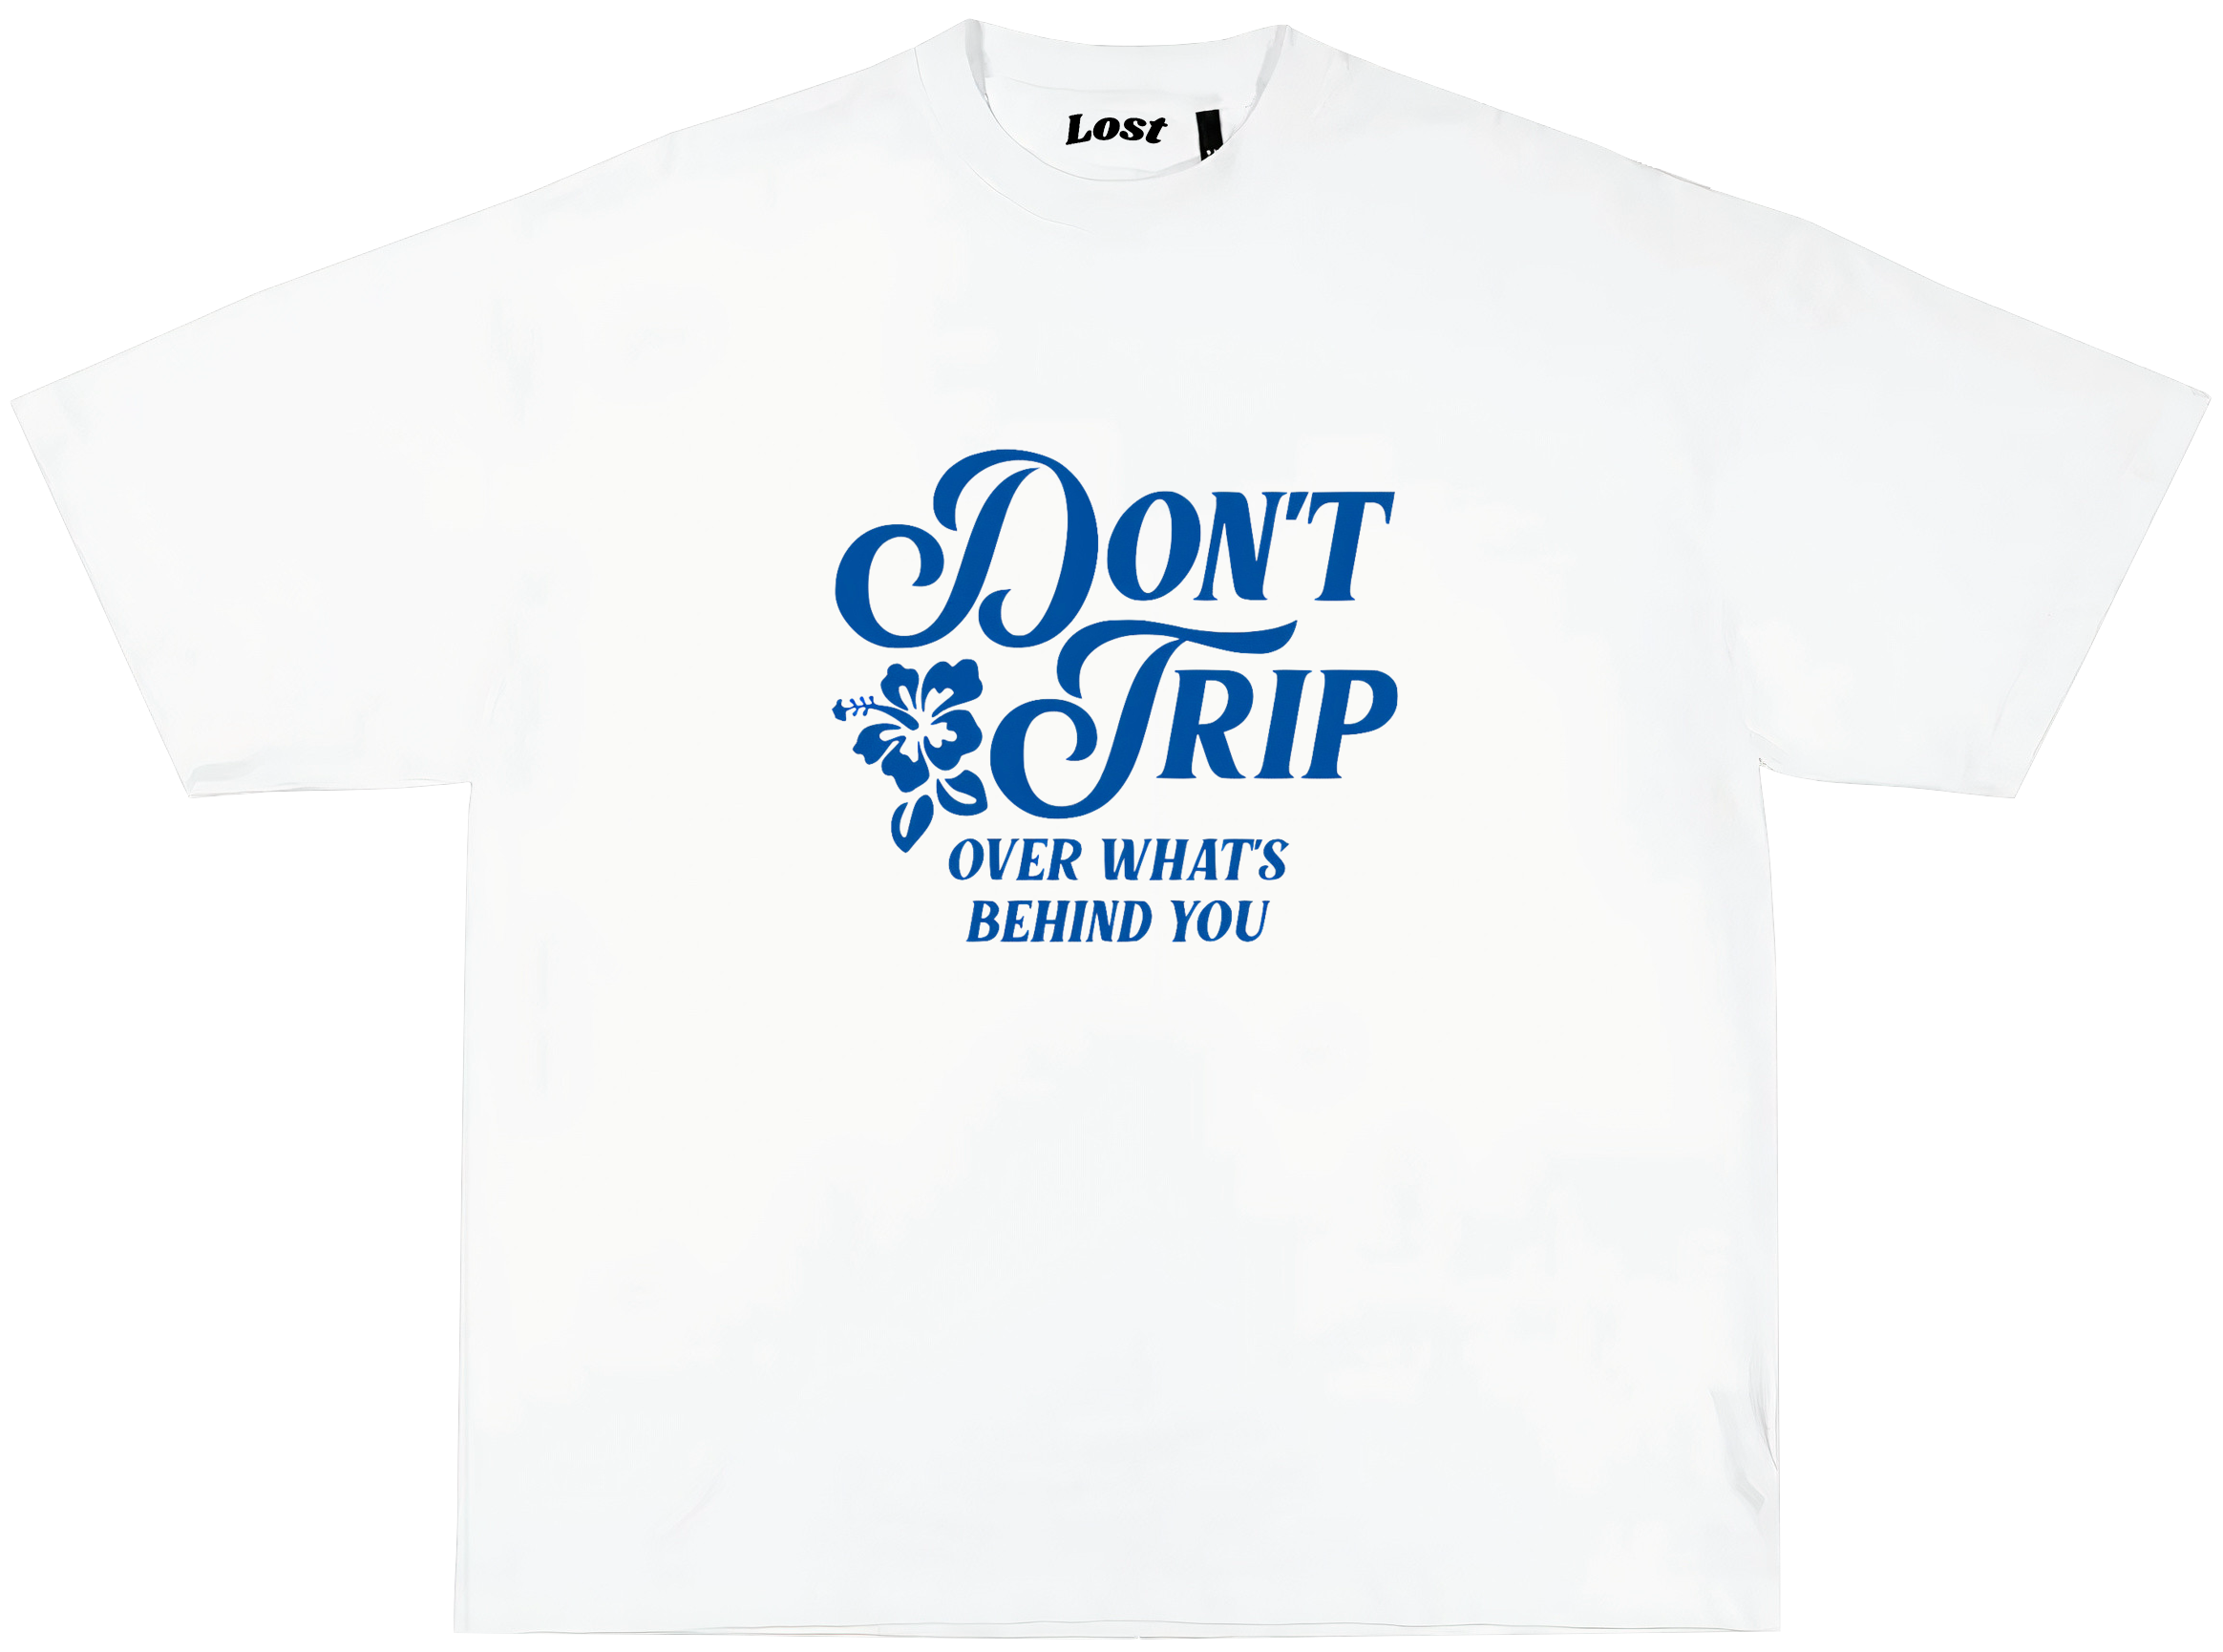 MAC MILLER "Don't trip" Oversized T-shirt